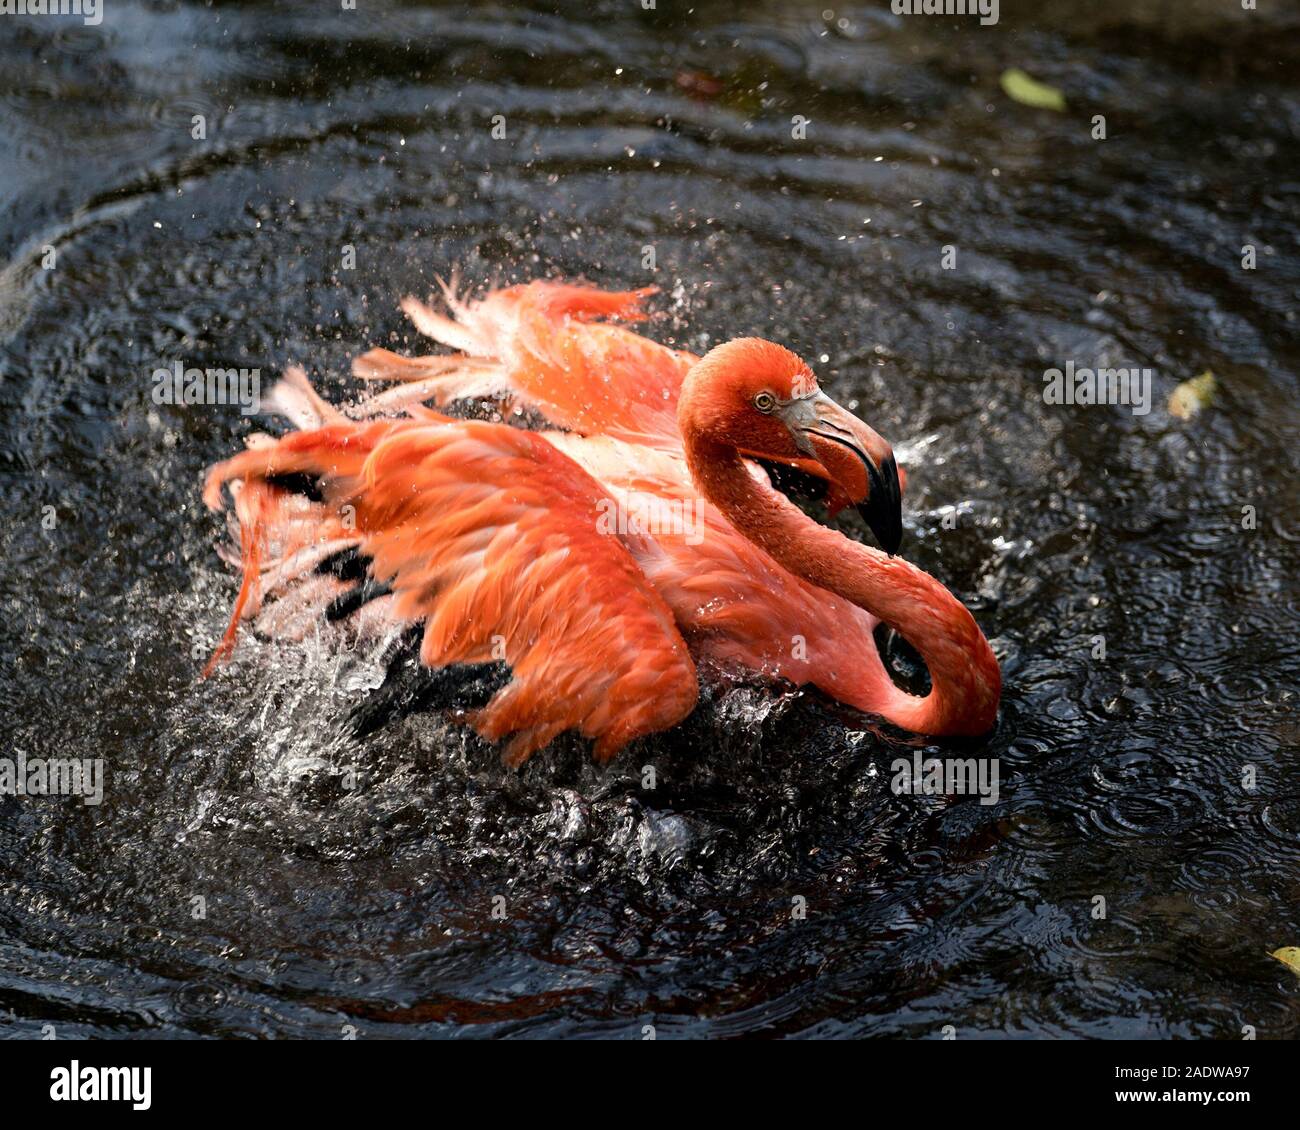 Flamingo bird close-up vista di profilo in acqua spruzzi d'acqua con le sue ali visualizzando il suo bellissimo piumaggio, nei suoi dintorni. Foto Stock